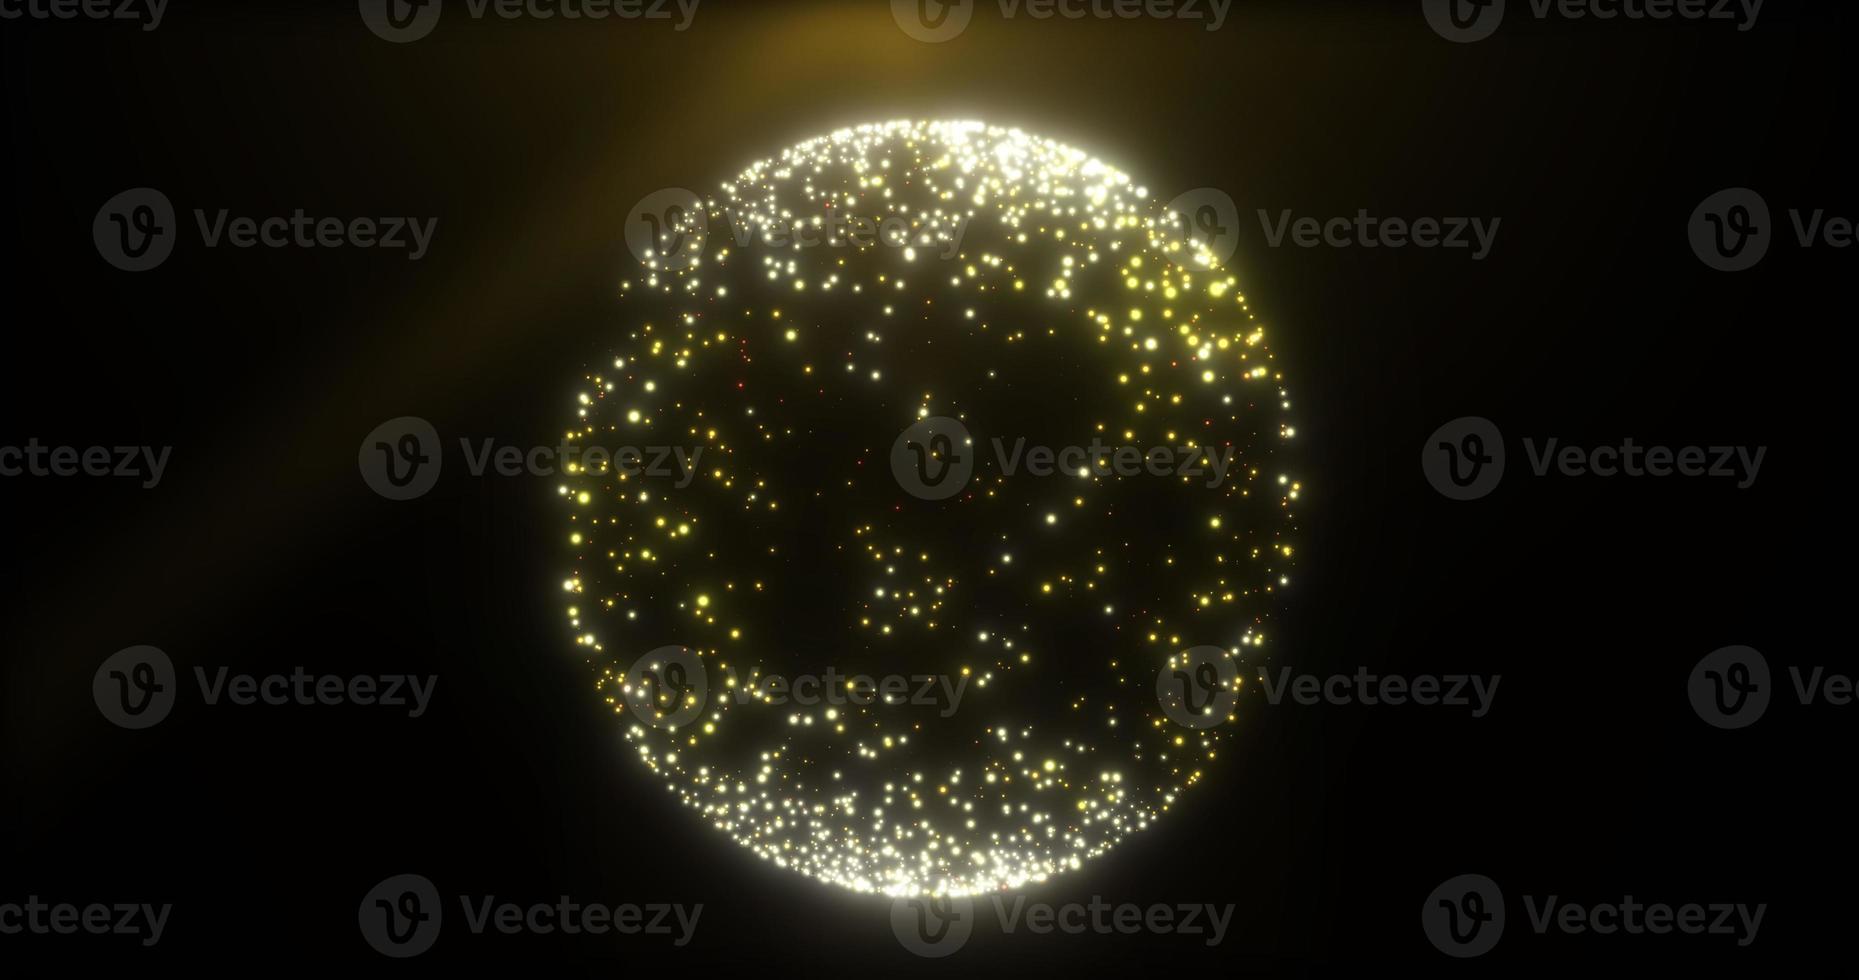 esfera círculo bola hecha de pequeñas partículas voladoras luminosas puntos granos de arena oro amarillo brillante festivo. fondo abstracto foto